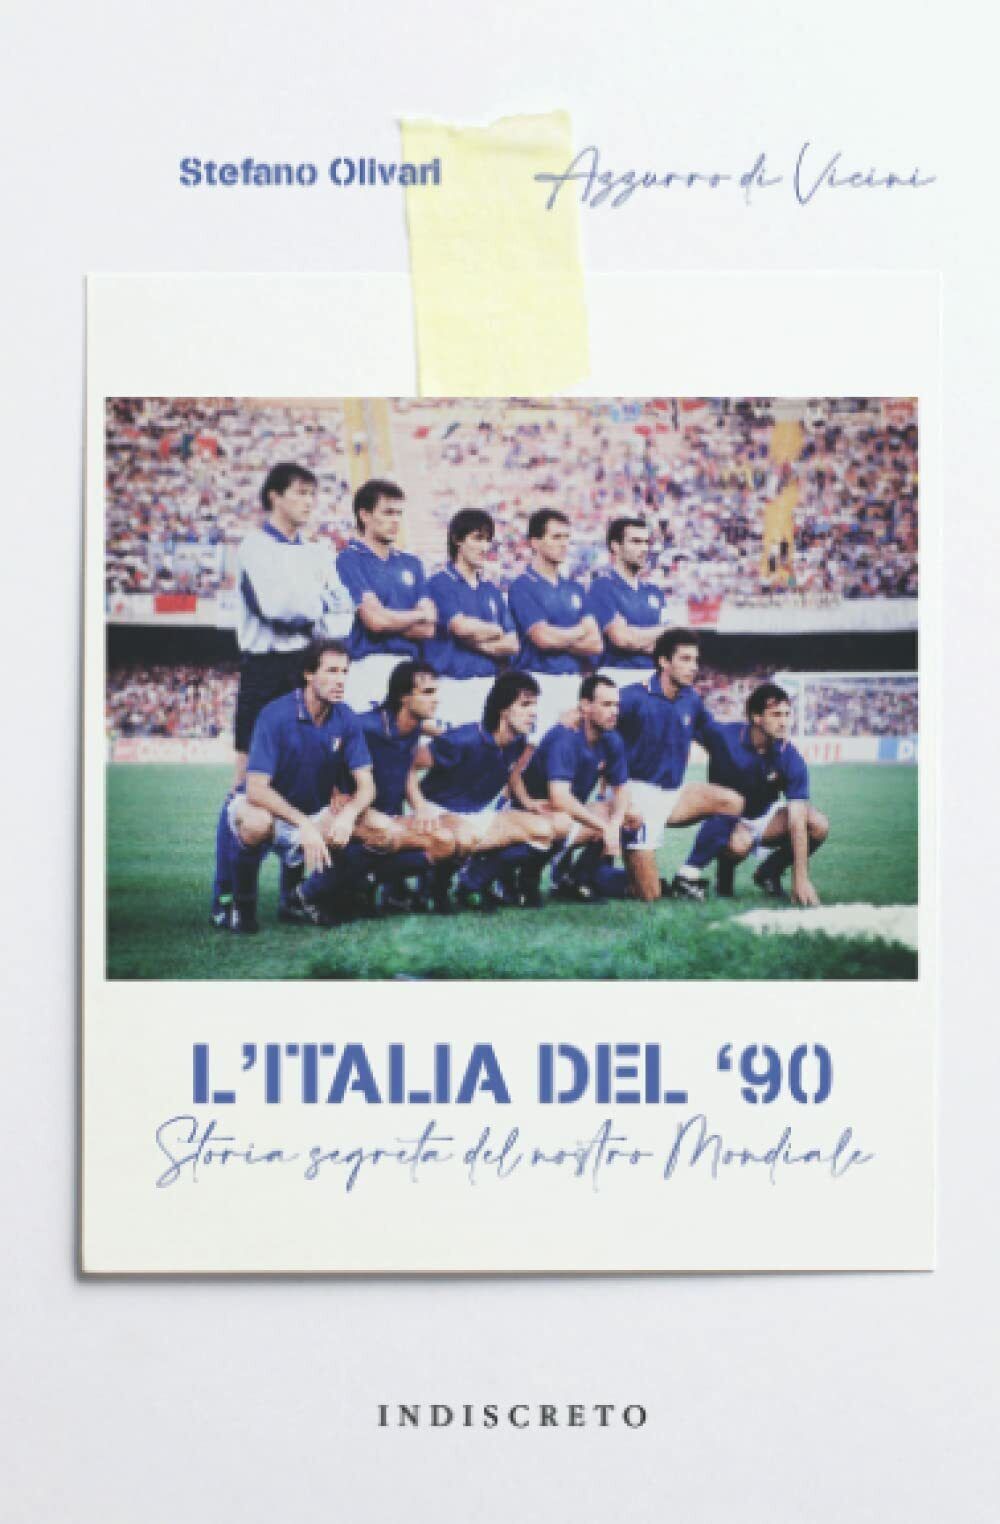 L'Italia del '90 - Stefano Olivari, Azzurro di Vicini - Indiscreto, 2021